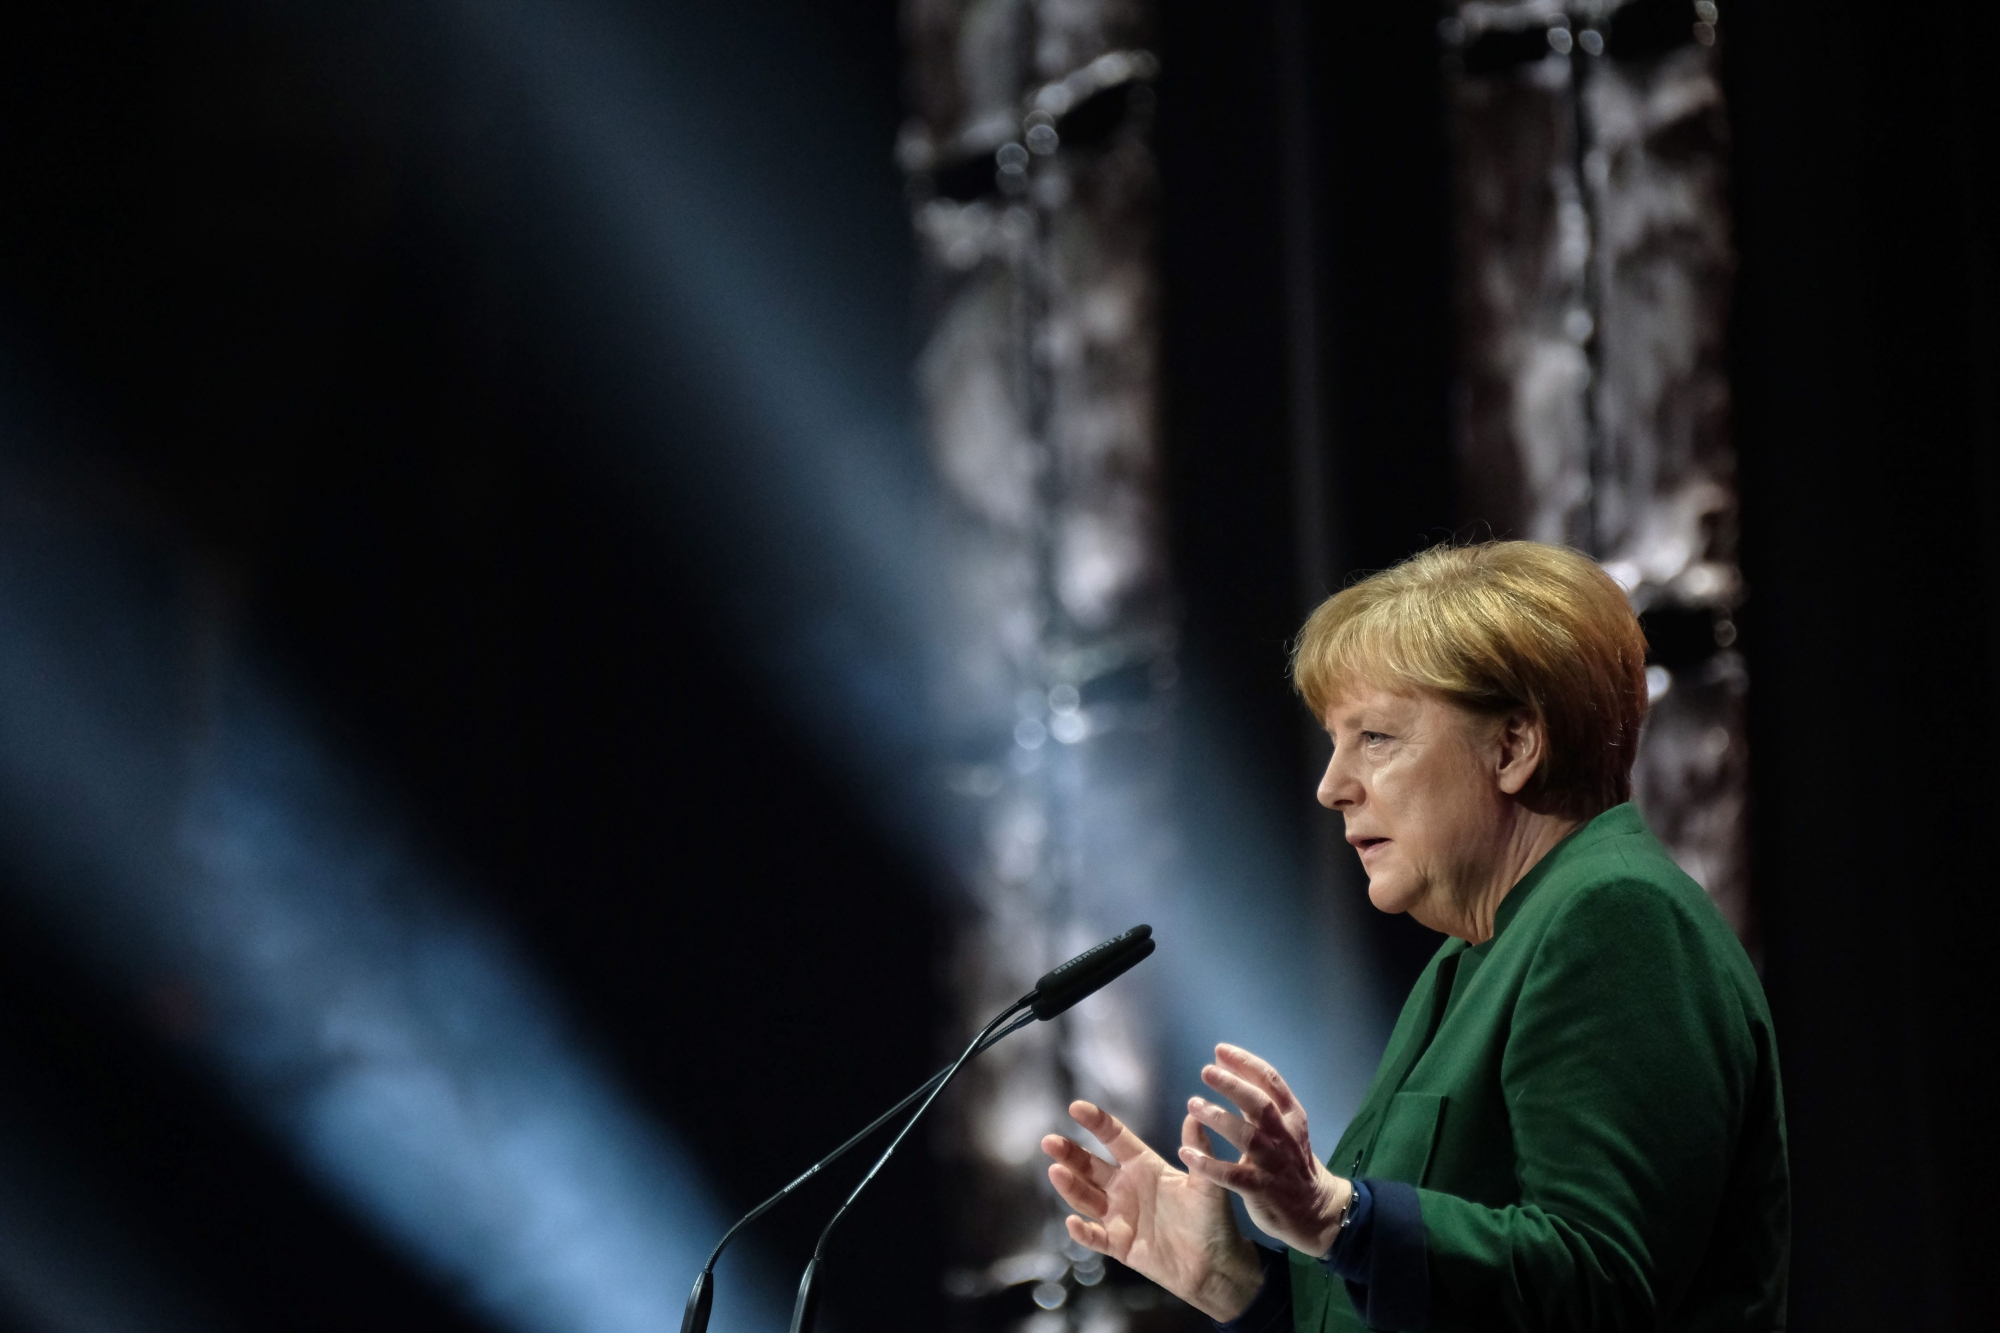 Bundeskanzlerin Angela Merkel (CDU) spricht am 19.03.2017 in Hannover (Niedersachsen) bei der Eroeffnung der IT-Messe CeBIT. Japan ist Partnerland der CeBIT 2017. (KEYSTONE/DPA/Peter Steffen)